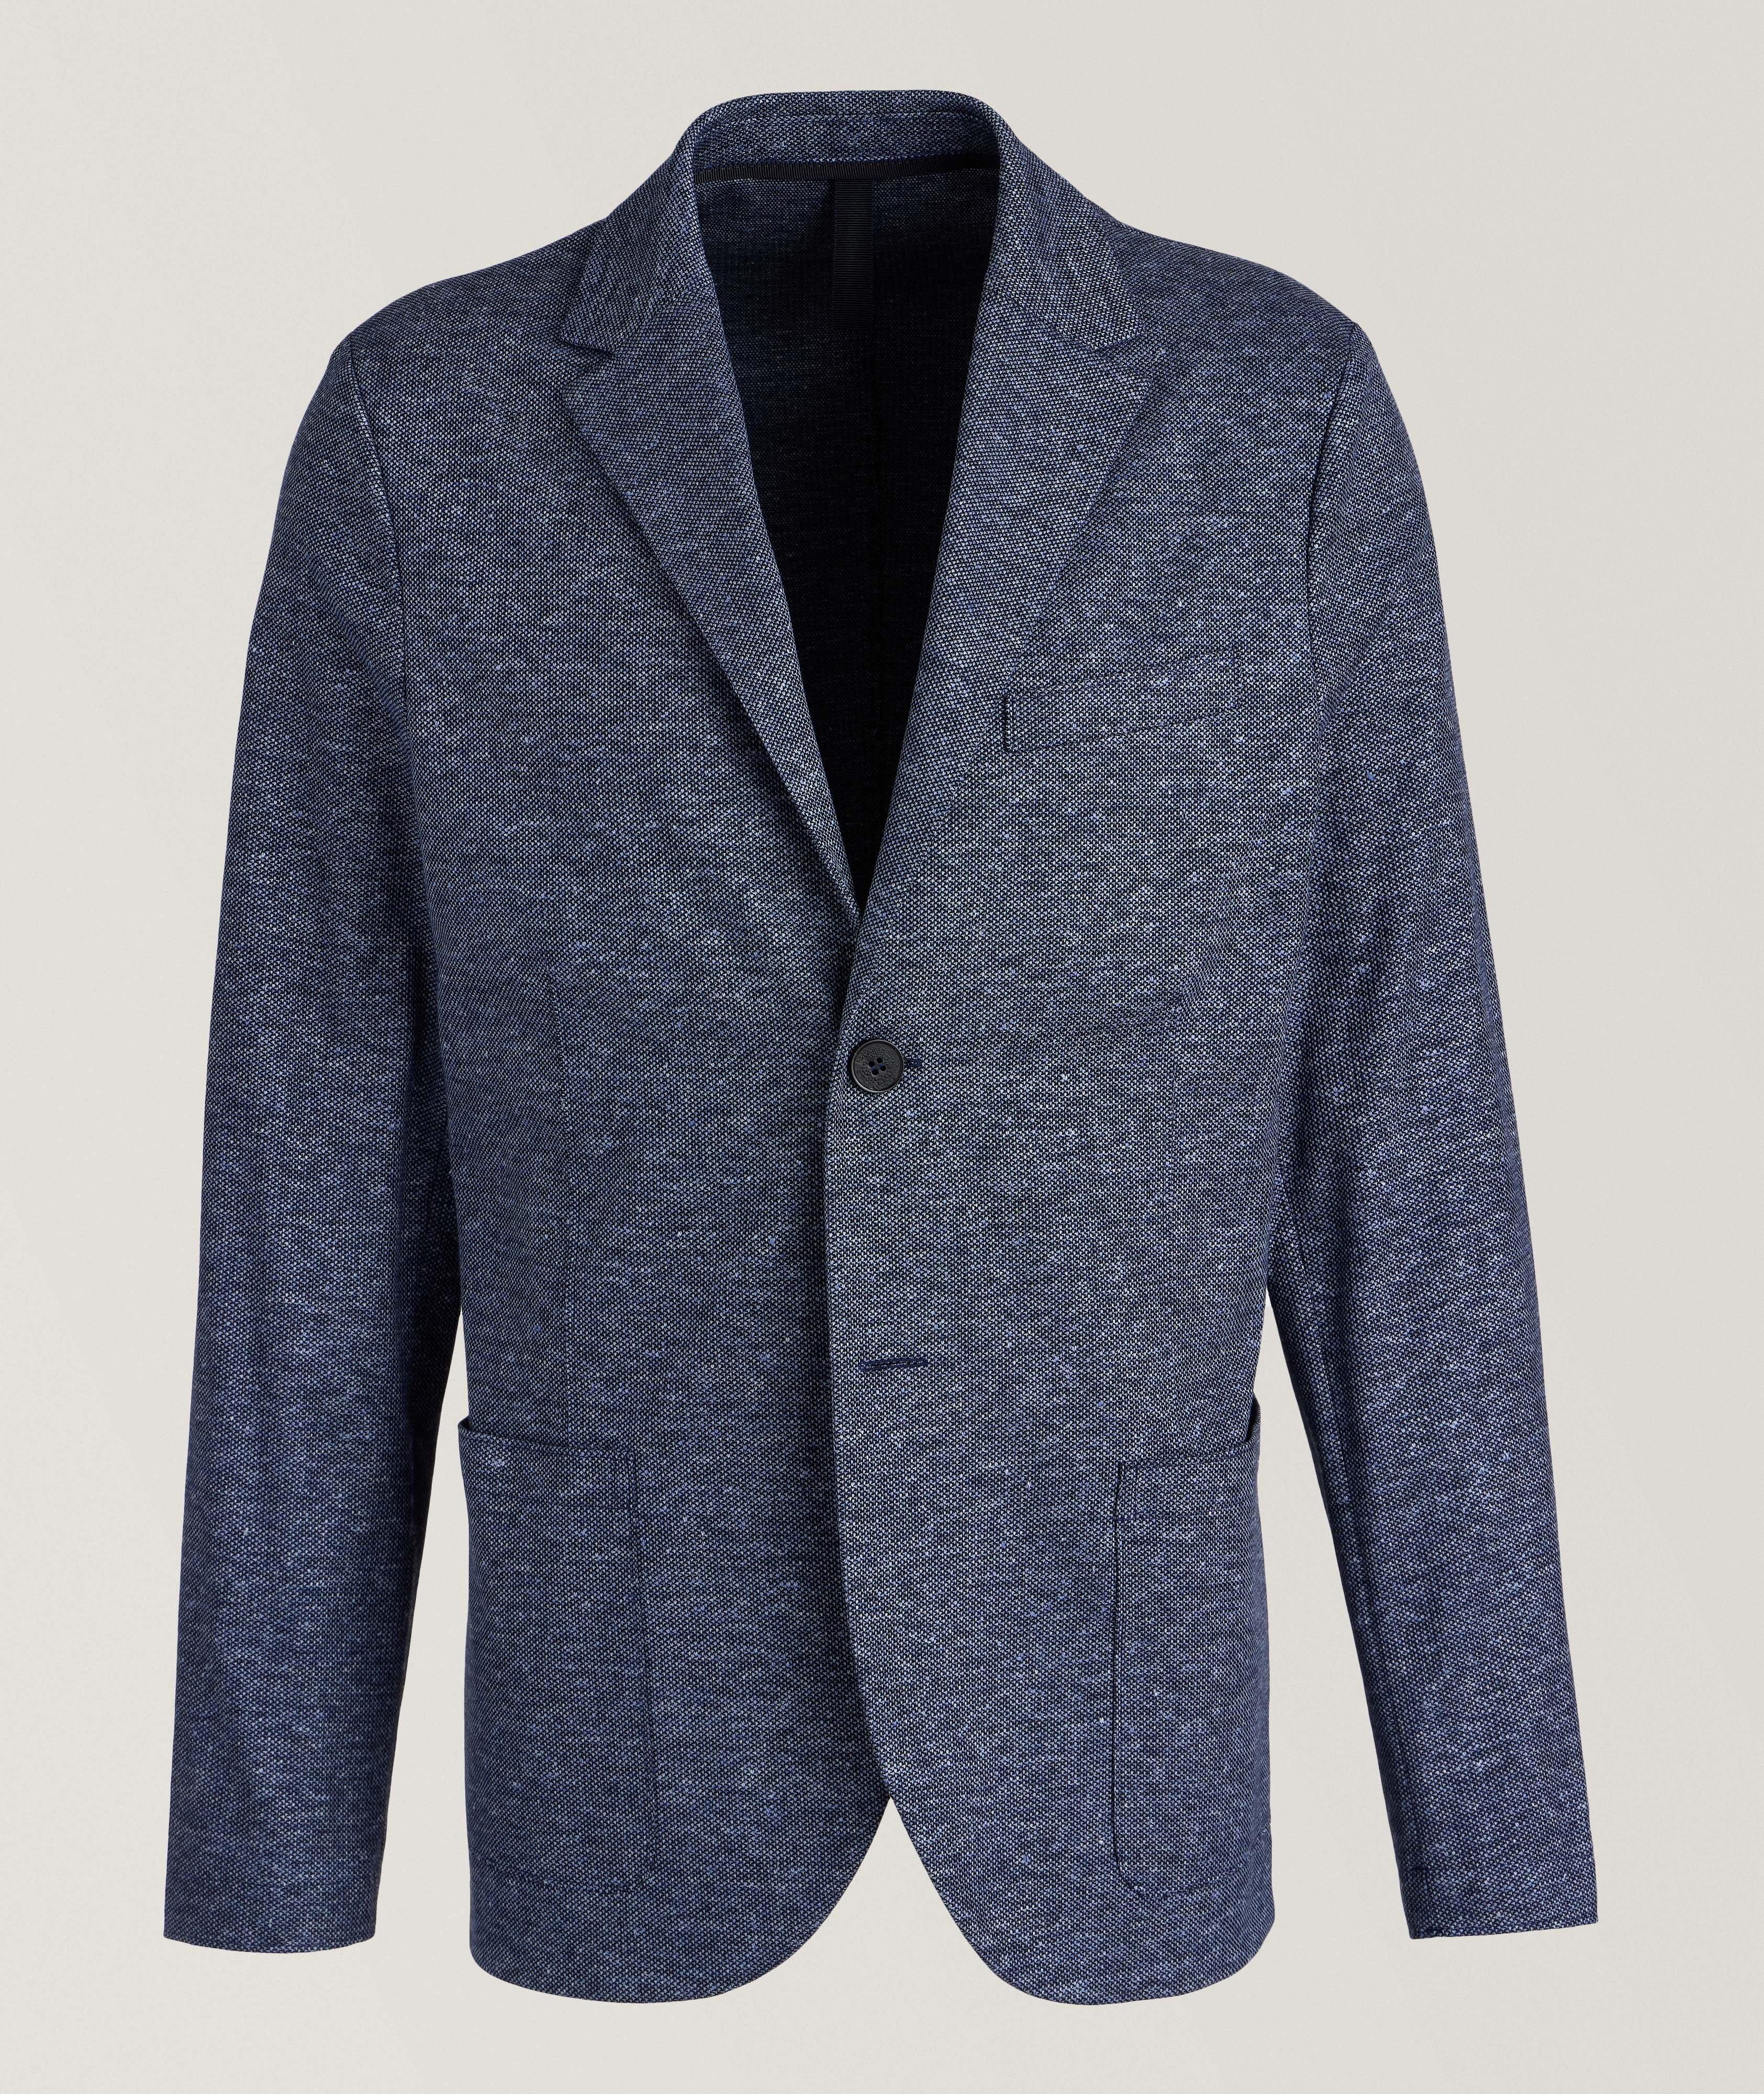 Textured Mélange Linen-Cotton Sport Jacket image 0